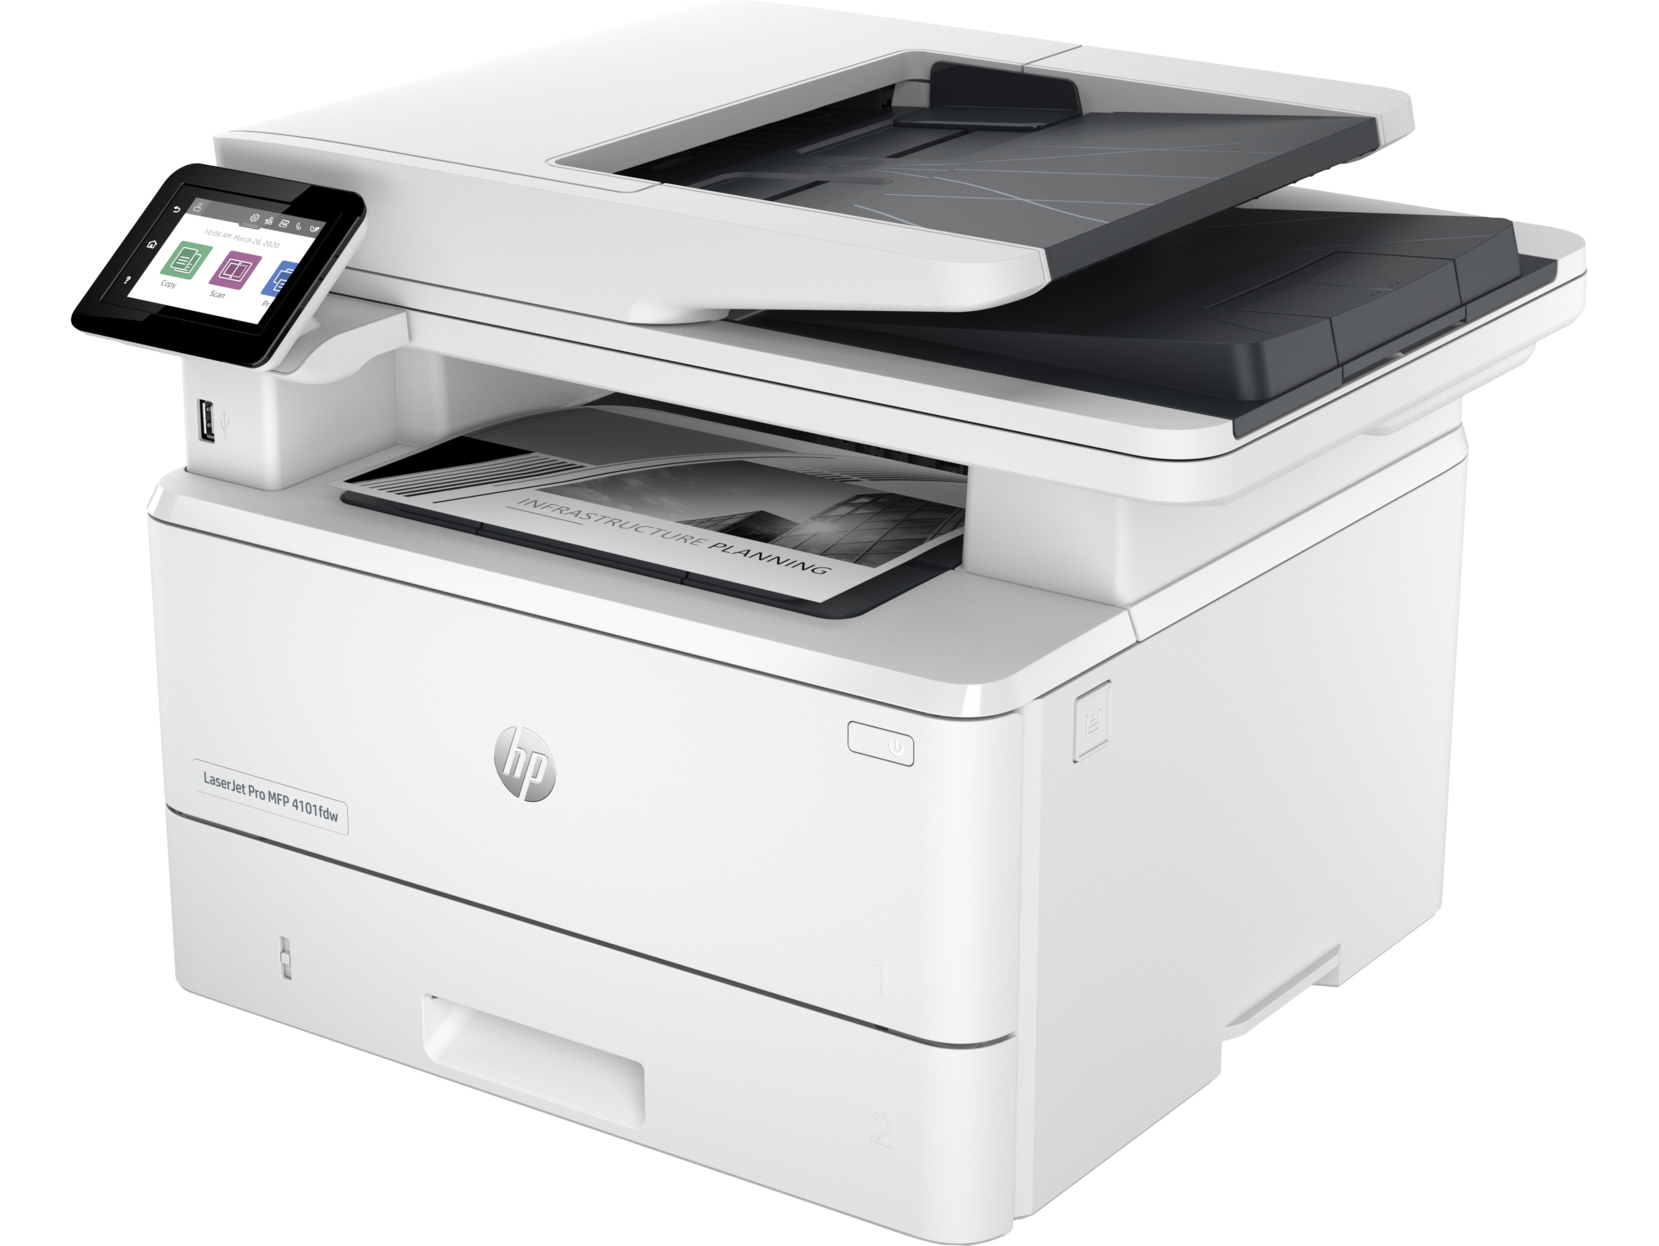 HP Laserjet Pro MFP 4103fdw Printer